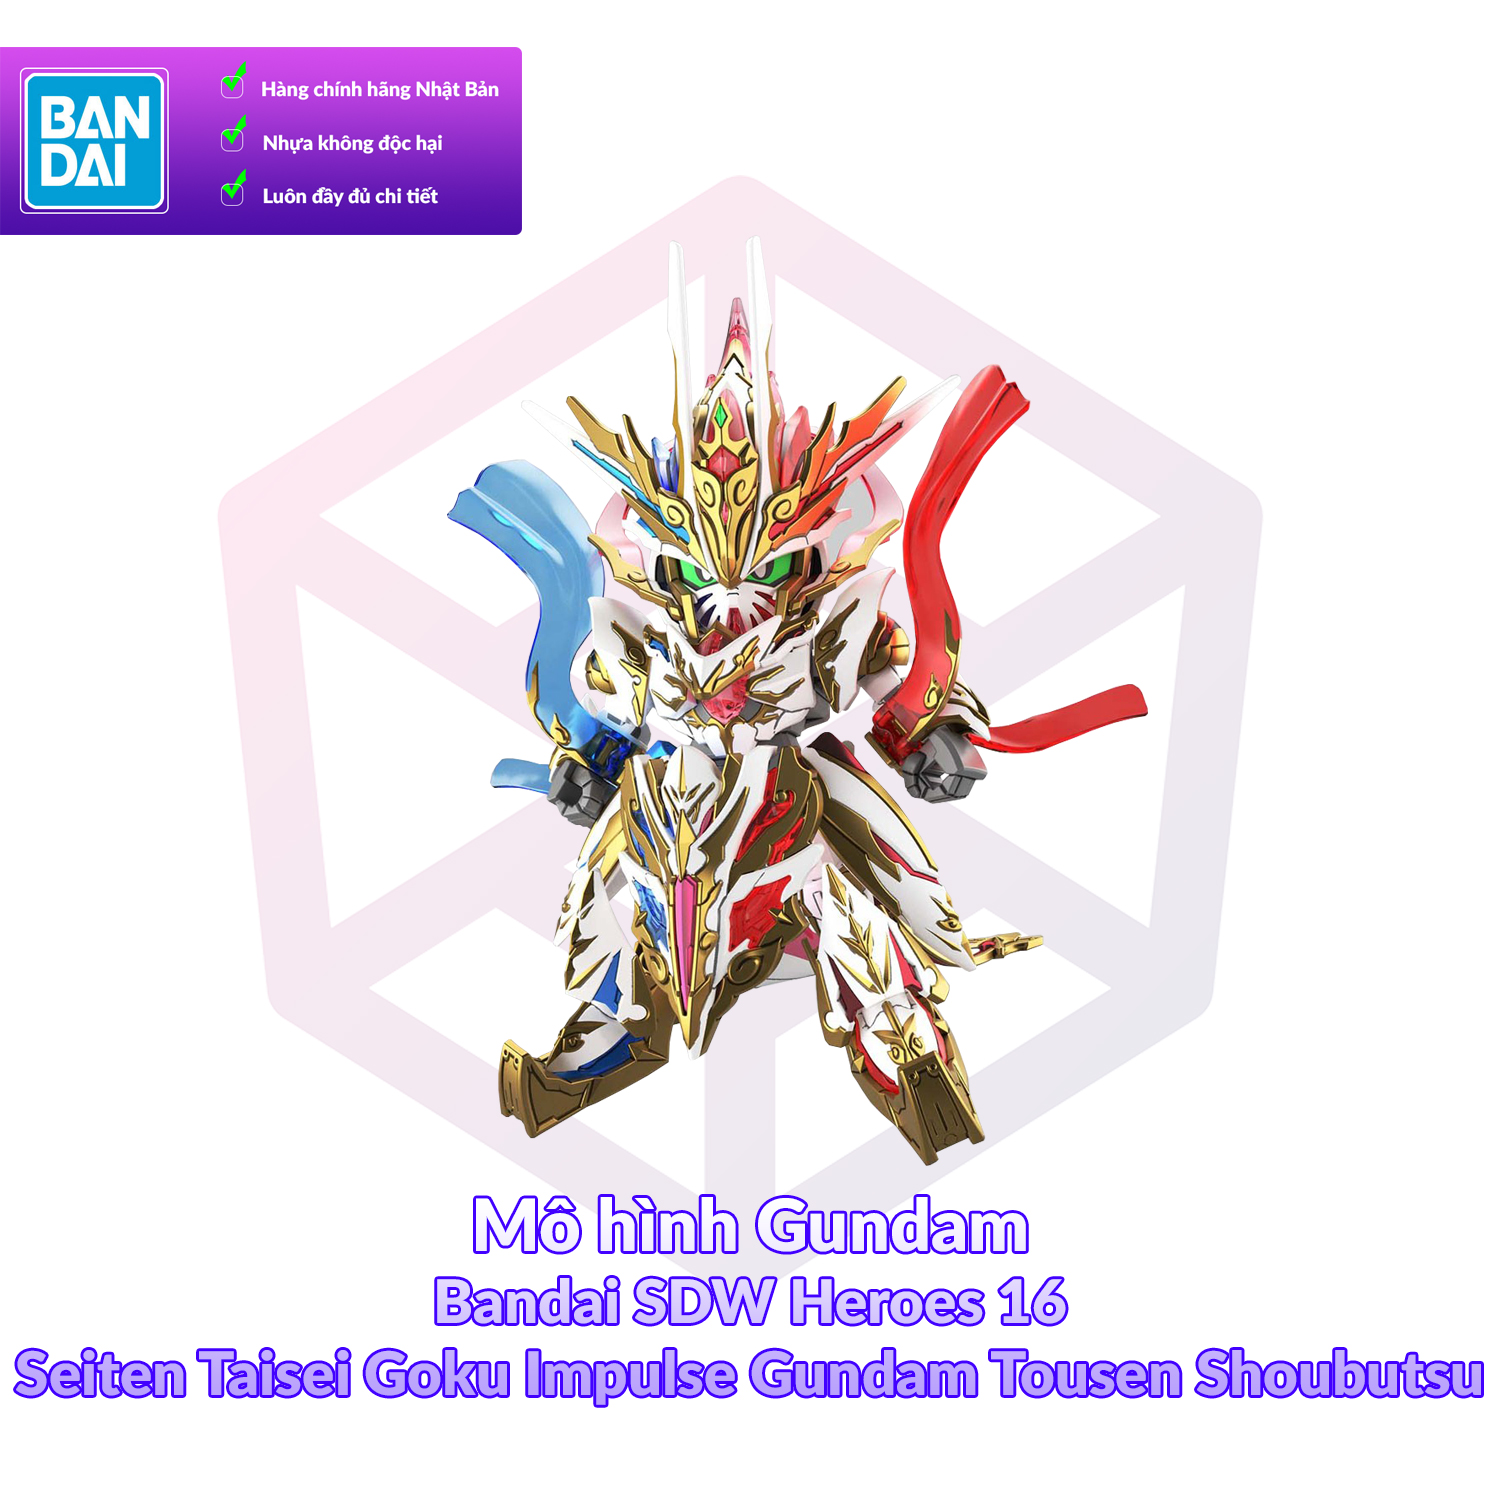 7-11 12 VOUCHER 8%Mô hình Gundam Bandai SDW Heroes 16 Seiten Taisei Goku